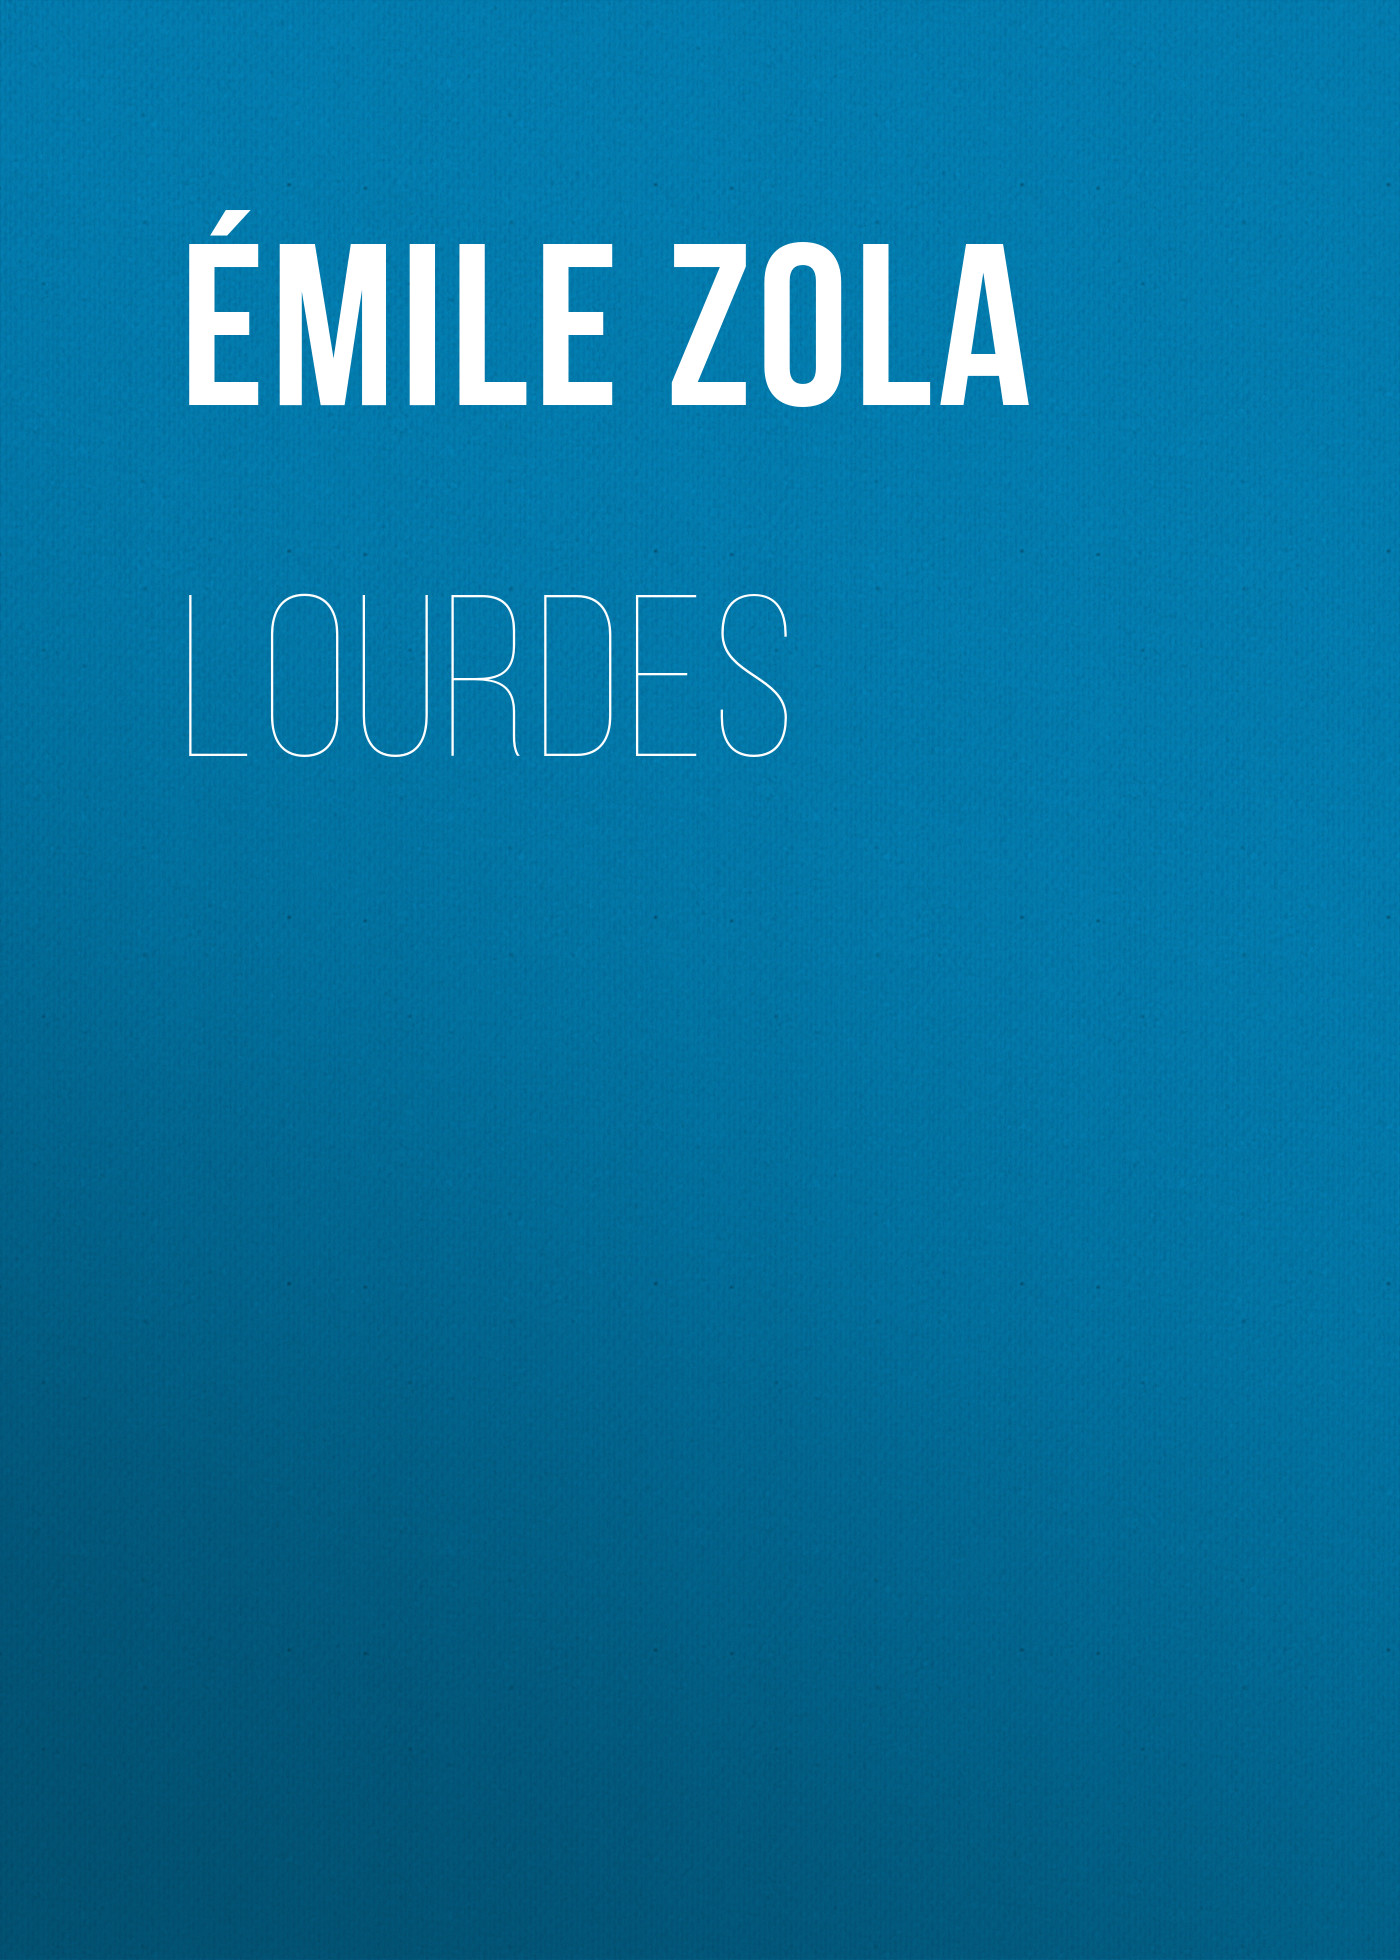 Книга Lourdes из серии , созданная Émile Zola, может относится к жанру Литература 19 века, Зарубежная старинная литература, Зарубежная классика. Стоимость электронной книги Lourdes с идентификатором 25560636 составляет 0 руб.